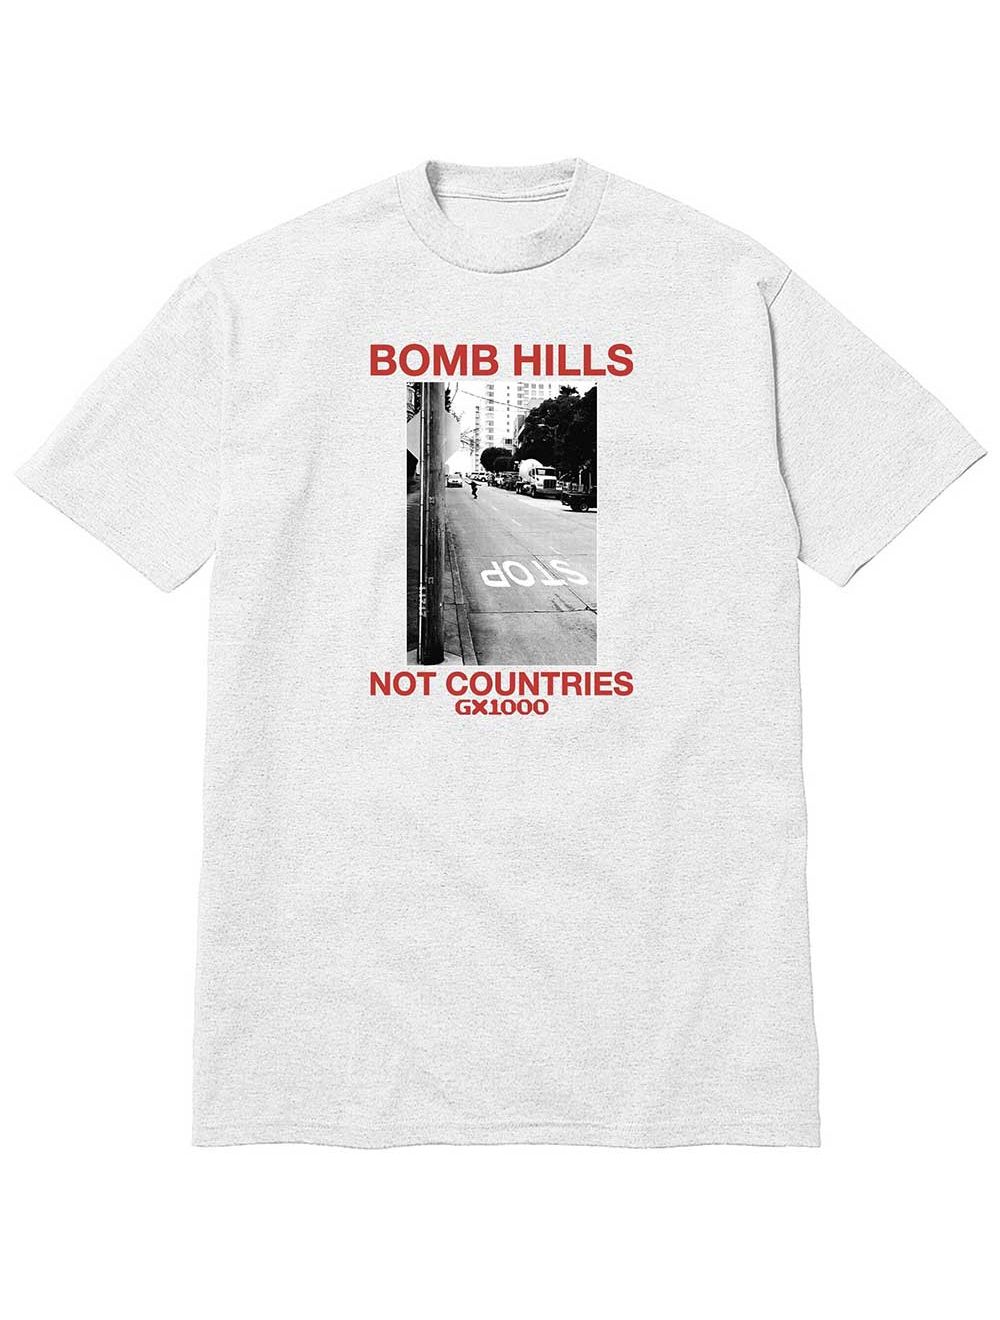 GX1000 Bomb Hills Not Countries Tee - Ash